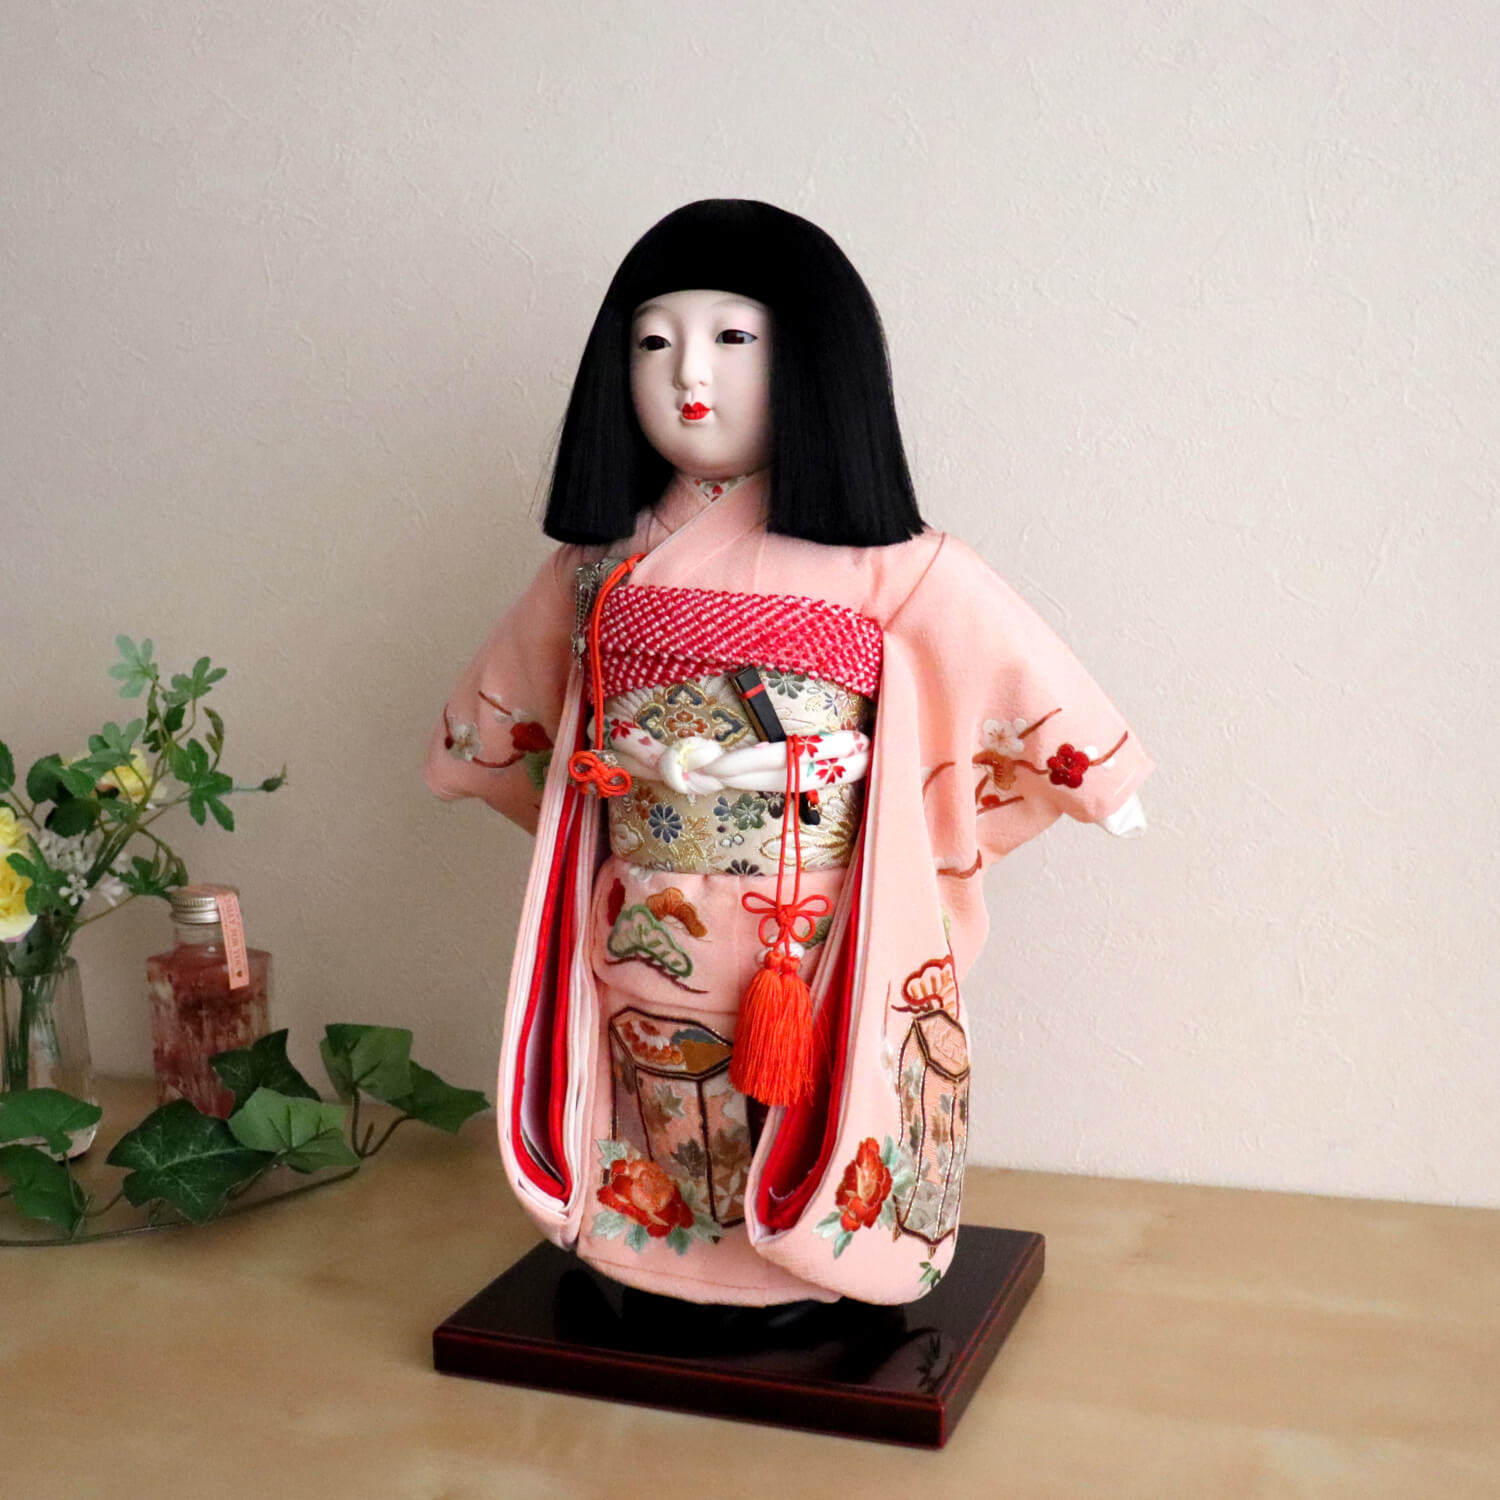 市松人形用 着物 刺繍 尺10号 赤 ピンク 菊 梅 松 ひな祭り 雛人形